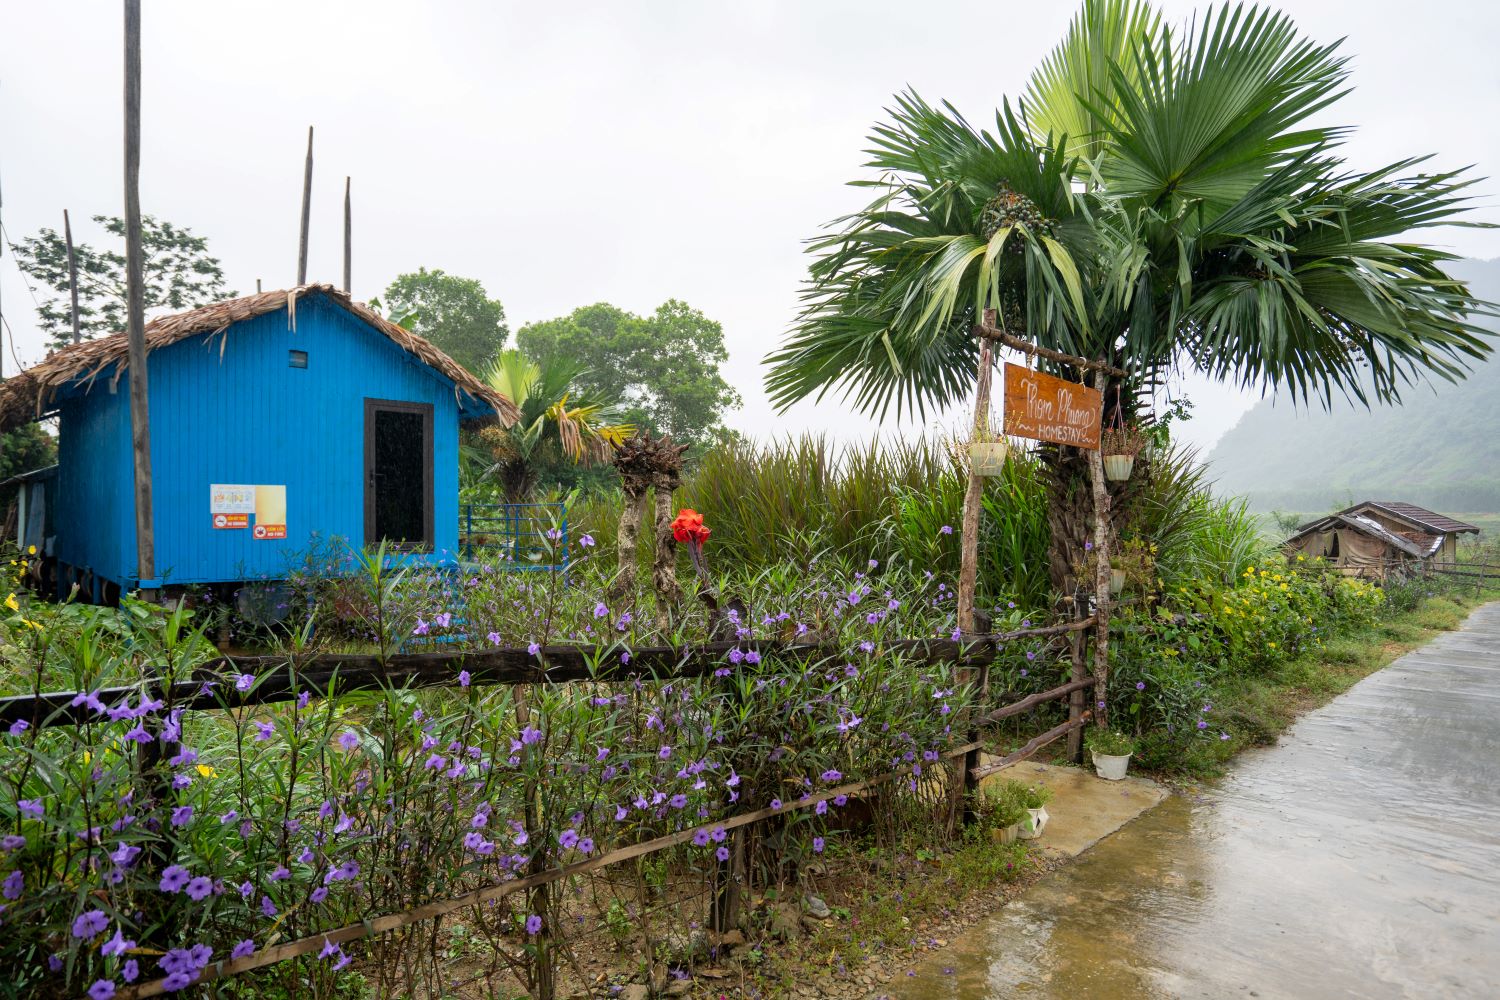 Căn Rural Homestay độc đáo được xây dựng trên những căn nhà nổi của người dân Tân Hóa.